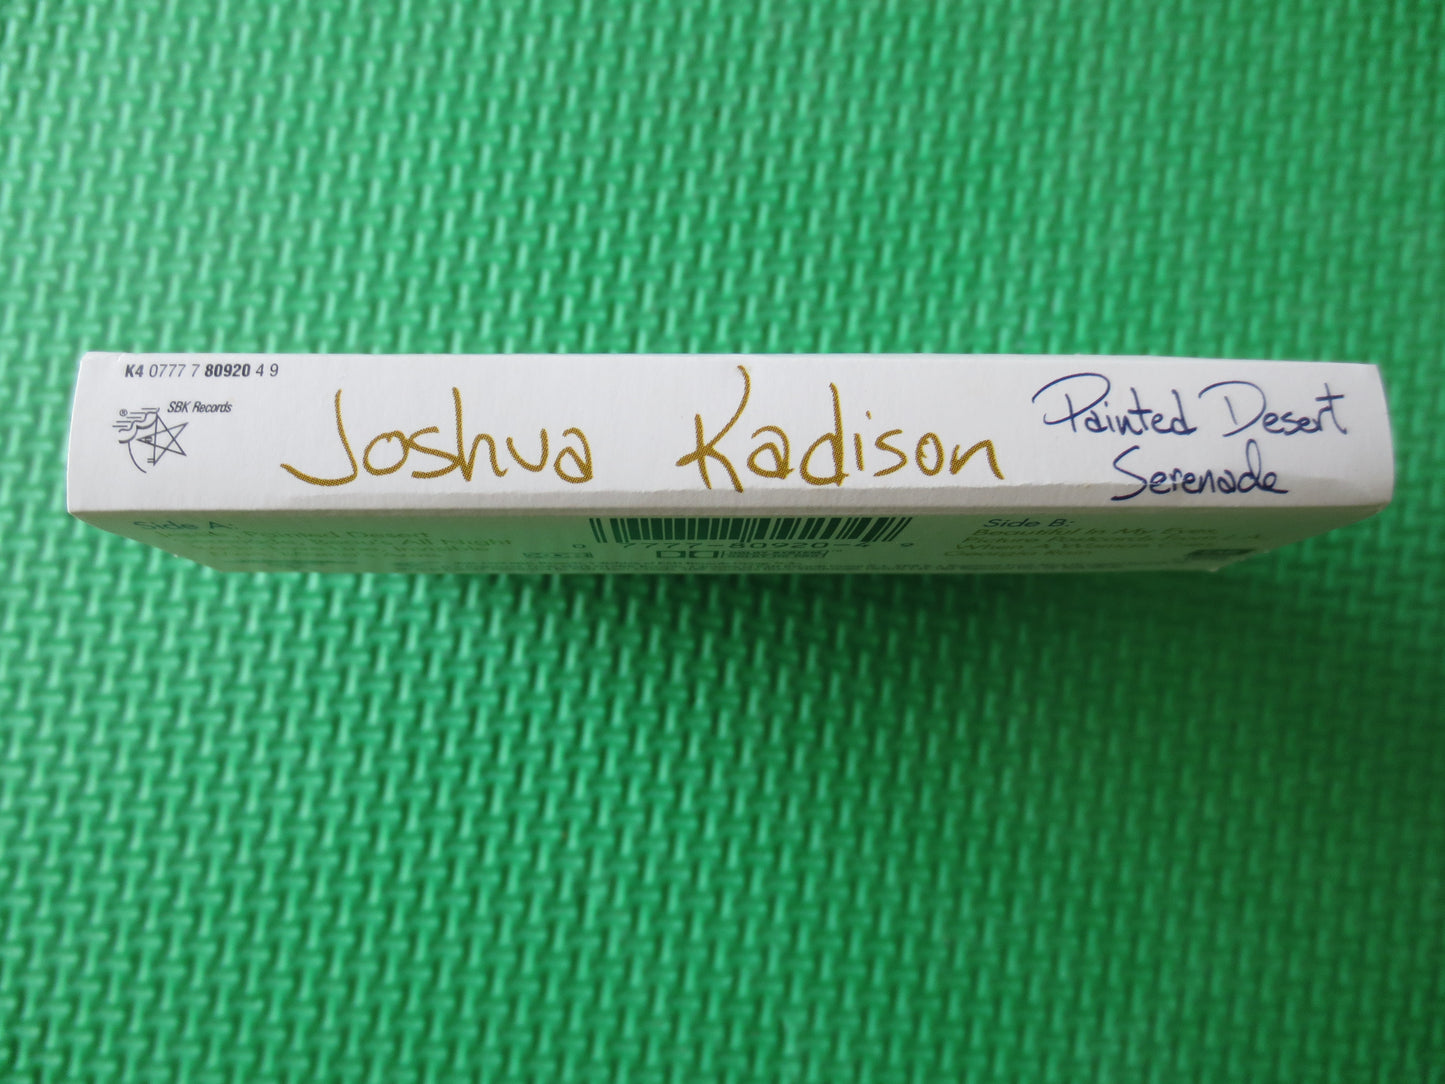 JOSHUA KADISON, PAINTED Desert Serenade, Joshua Kadison Tapes, Tapes, Folk Music Cassette, Cassette Music, 1993 Cassette